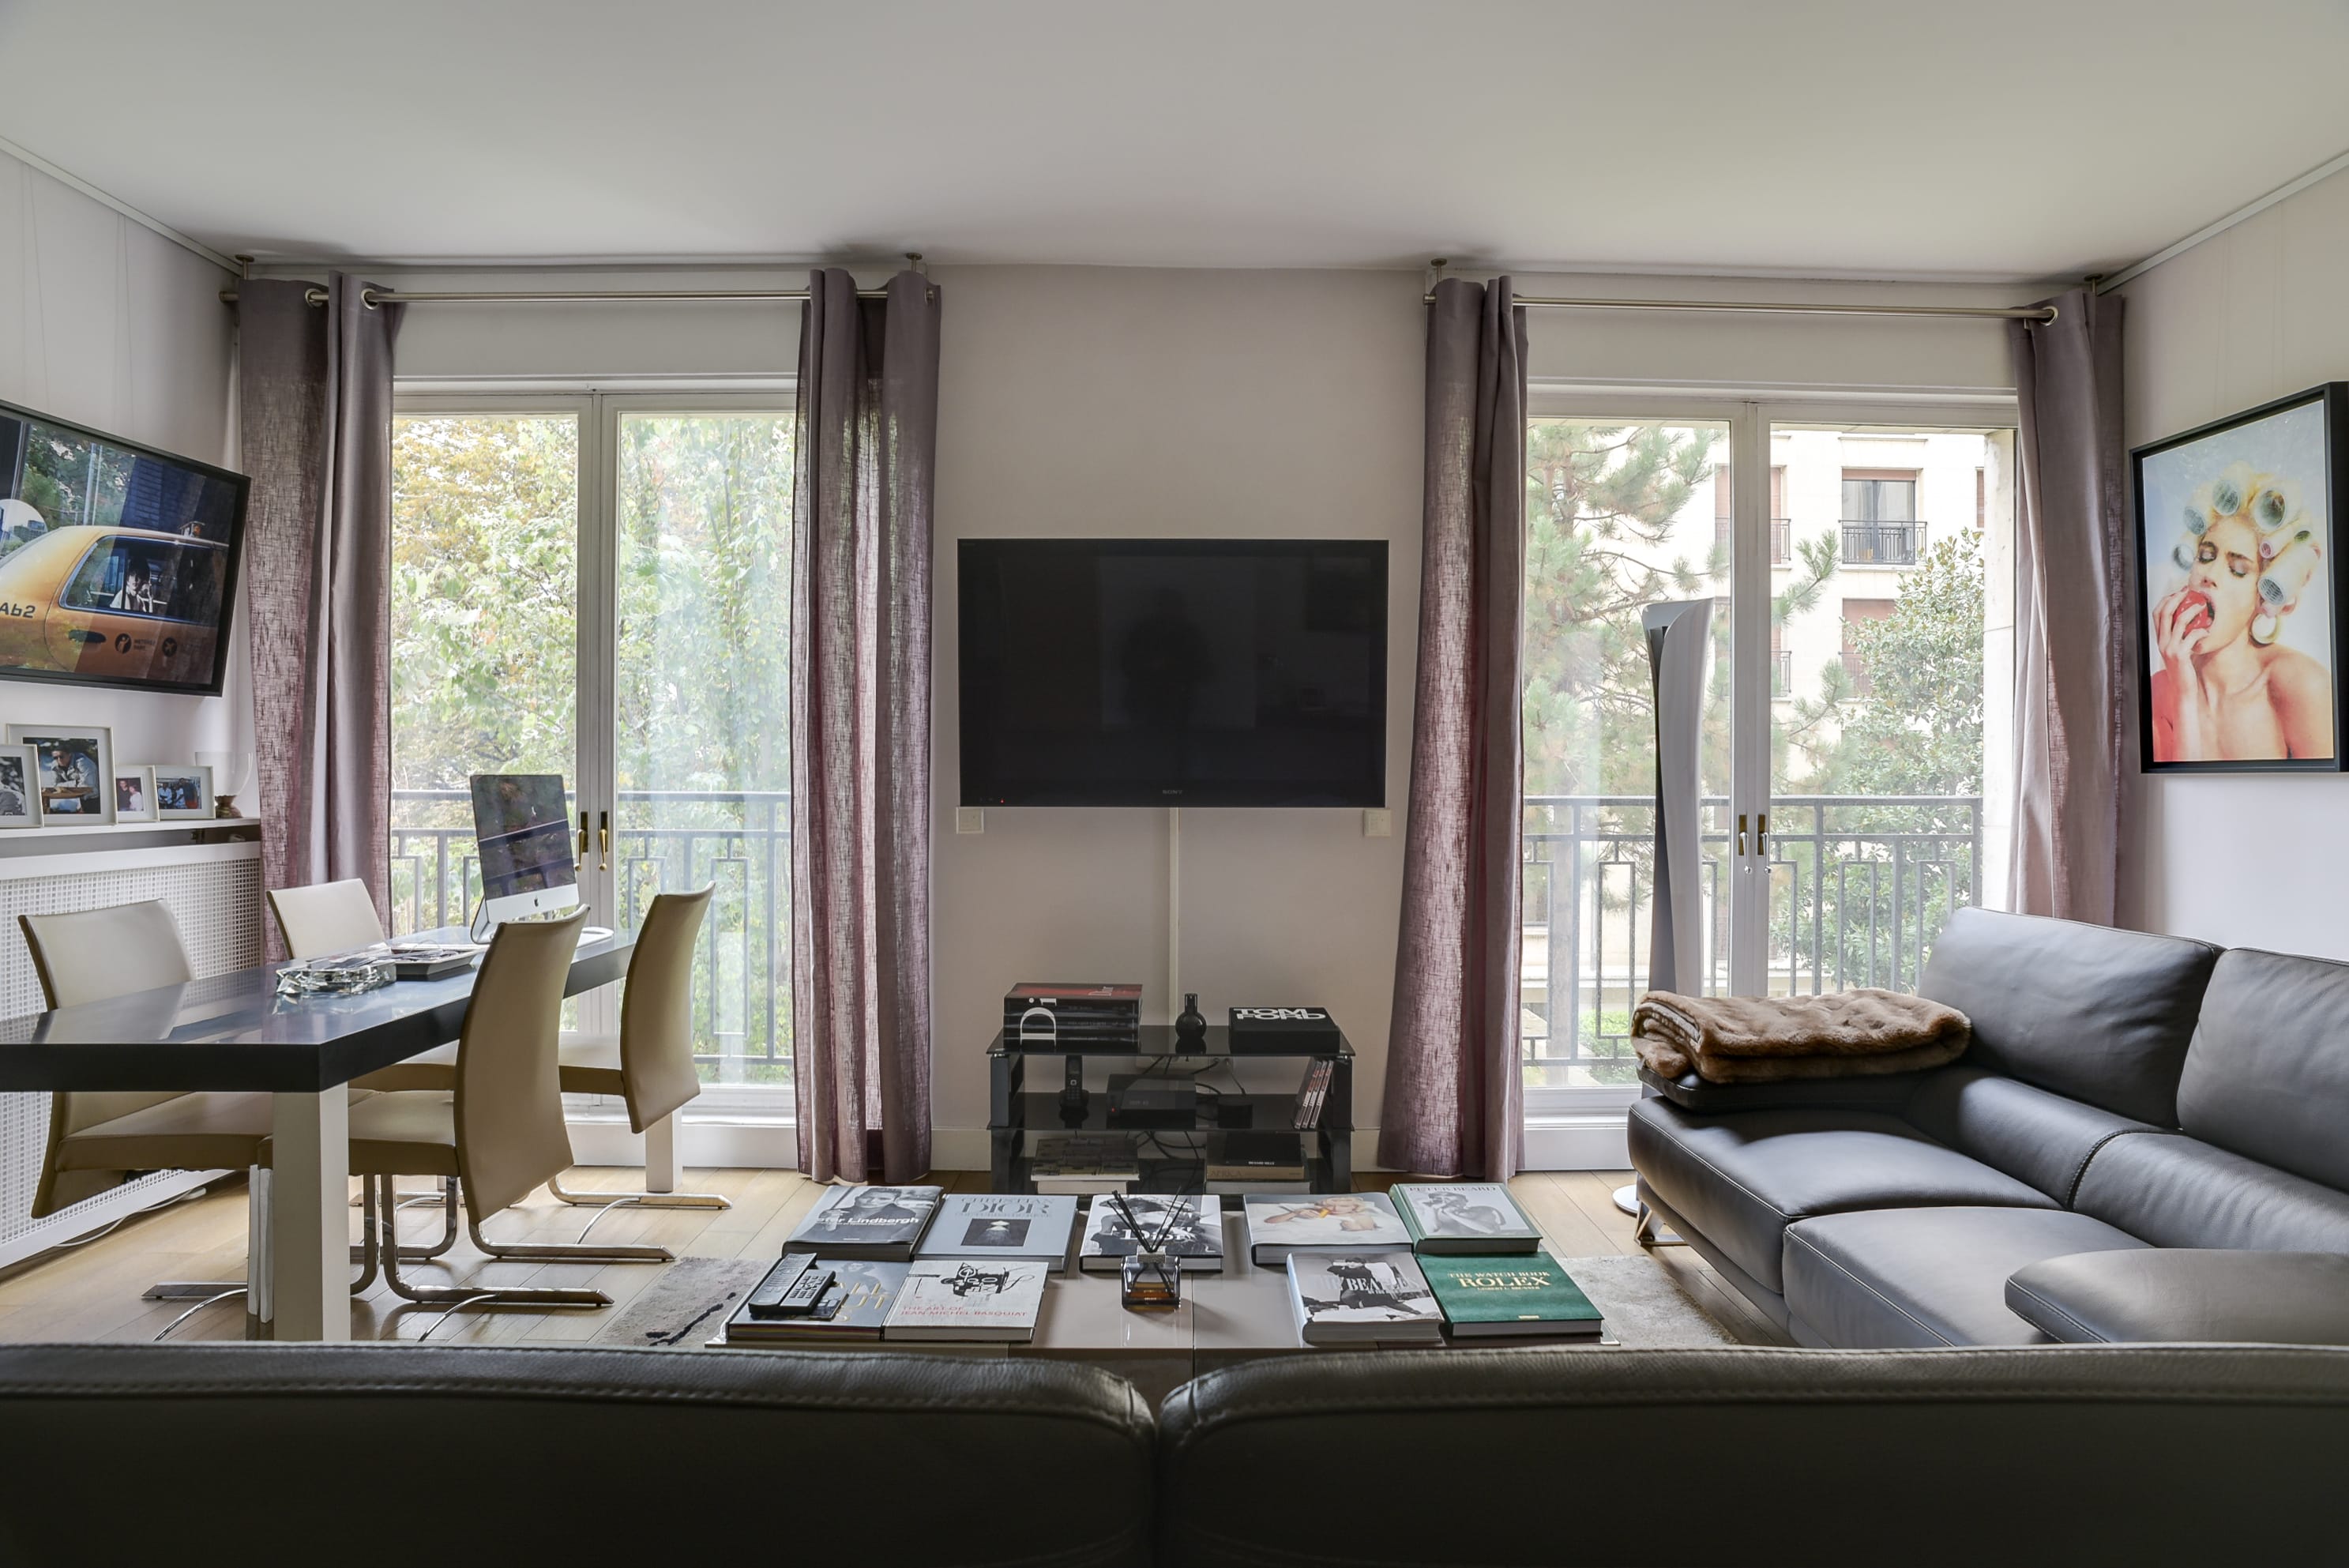 Sale Apartment Paris 8 (75008) - Montaigne Estate